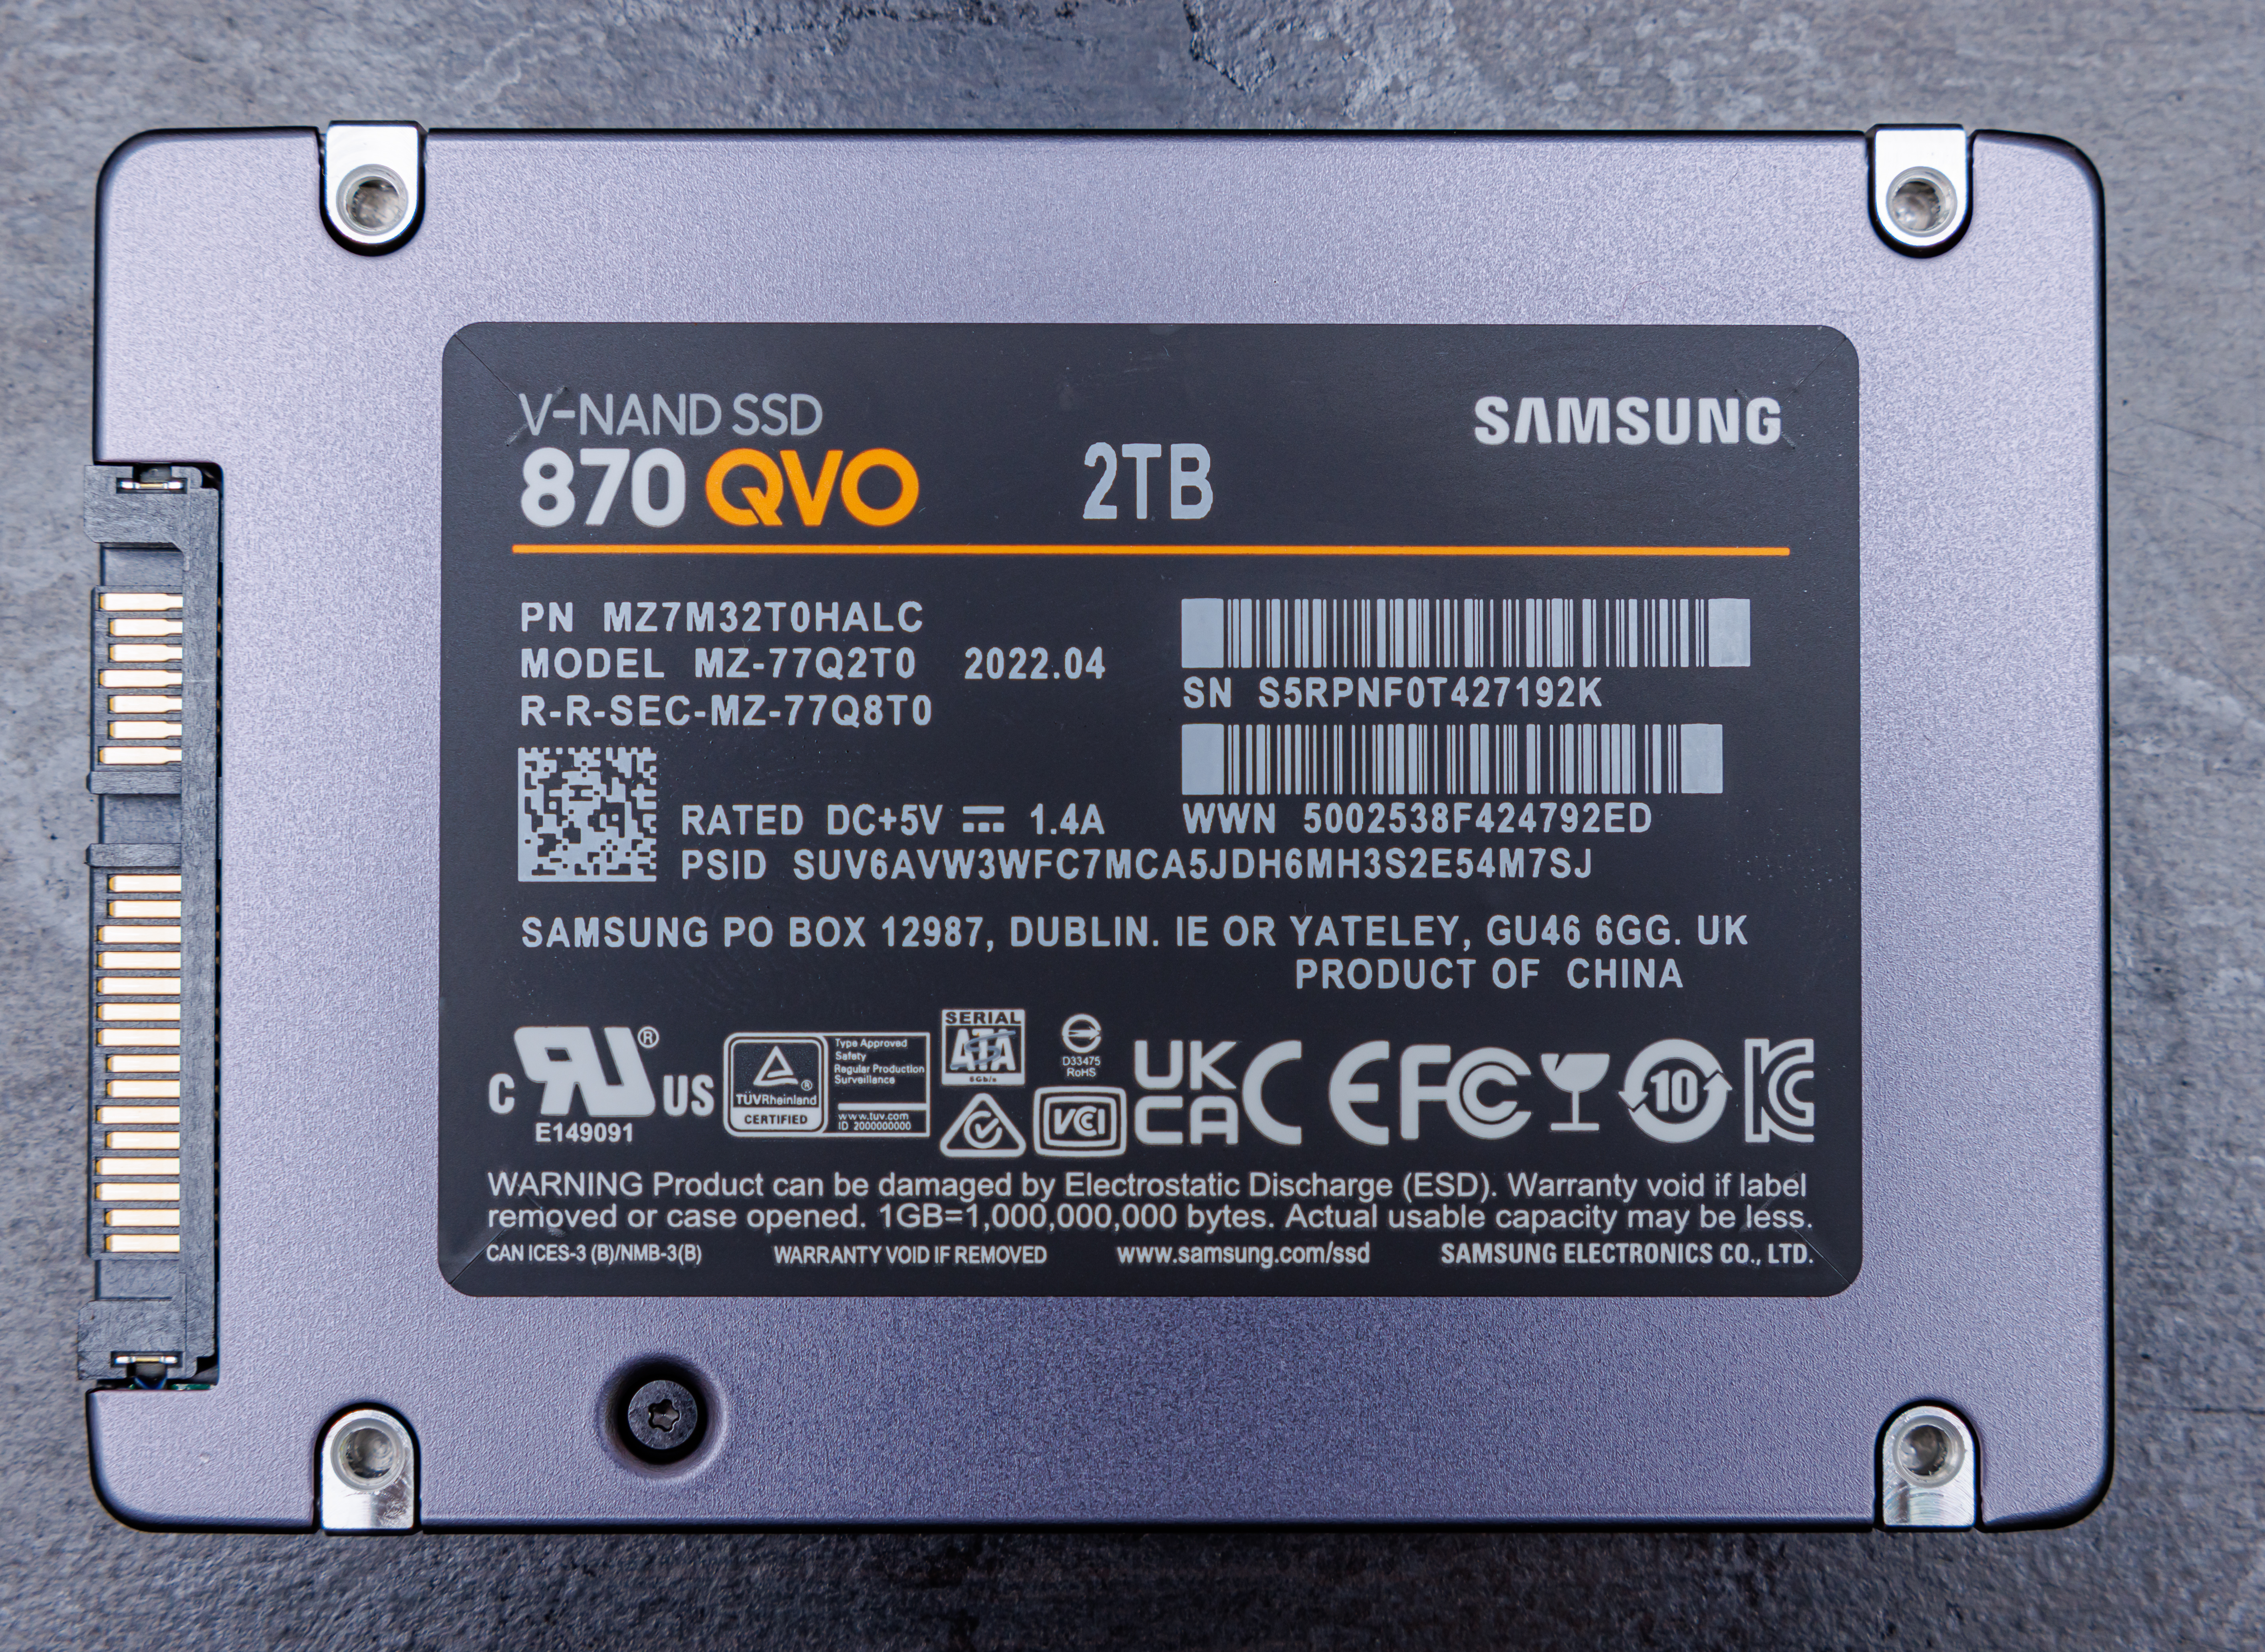 File:SAMSUNG SATA SSD 870 QVO 2TB REAR.jpg - Wikimedia Commons